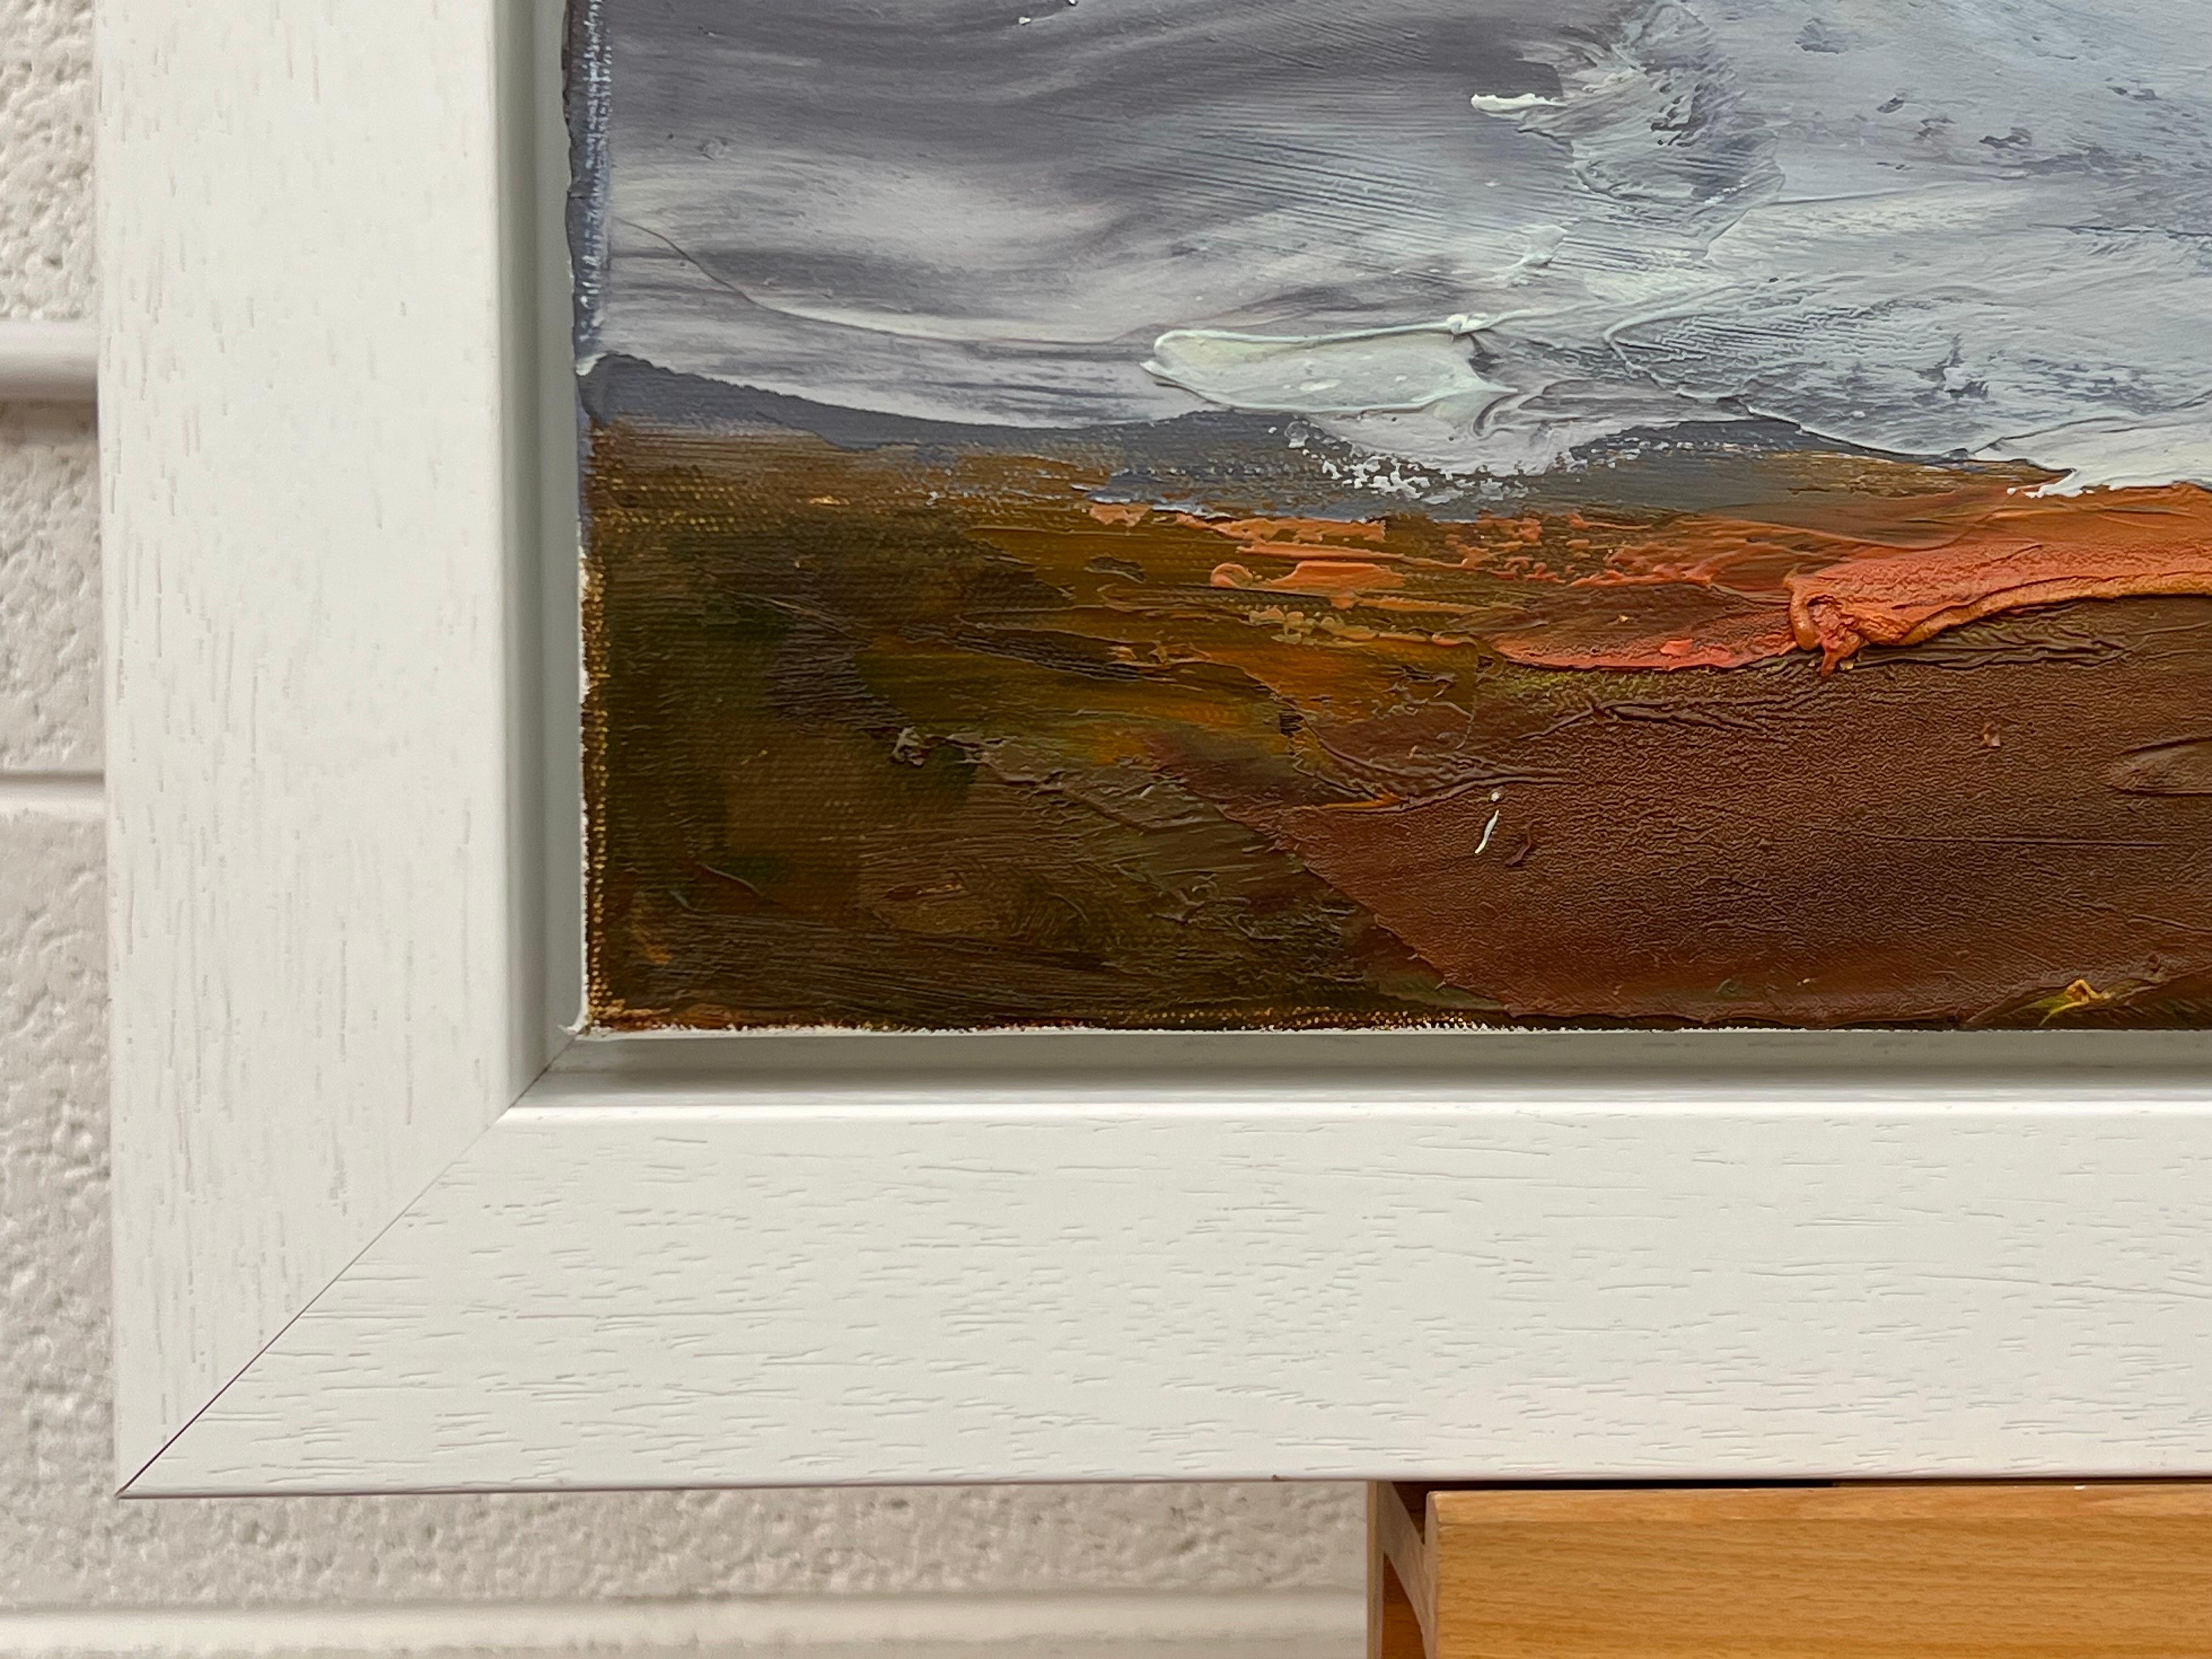 Peinture à l'huile à l'empâtement d'une lande dans la campagne anglaise par un artiste paysagiste britannique. Original sur toile. Représentation expressive et atmosphérique d'une tempête.  

L'œuvre d'art mesure 26 x 19 pouces
Le cadre mesure 32 x